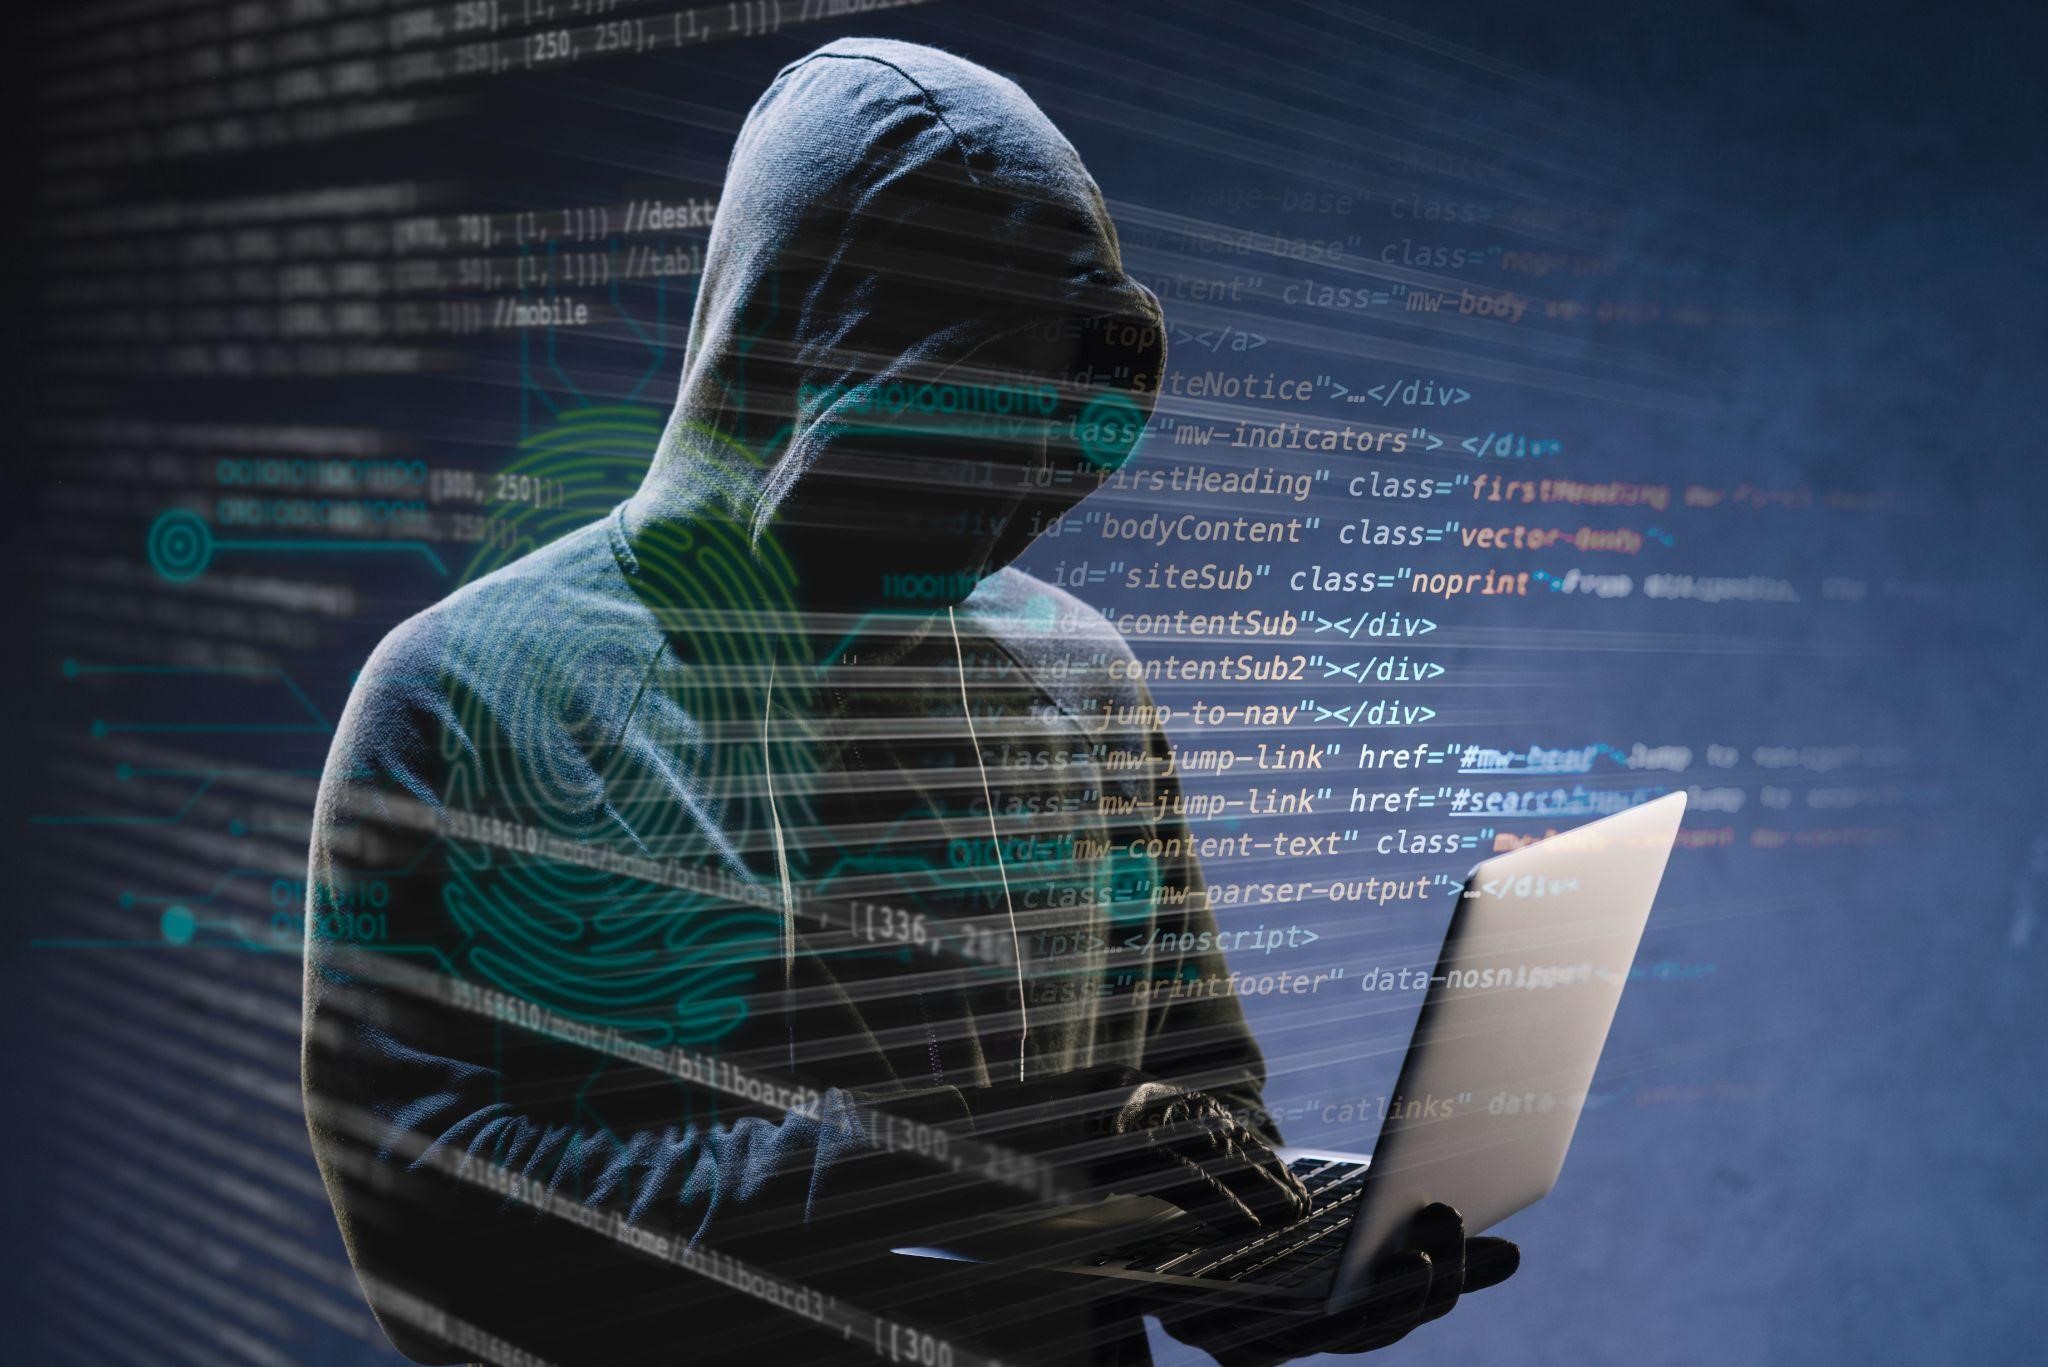 Creada una nueva forma de robar datos bancarios-Agencia Carabobeña de Noticias – ACN – Tecnología